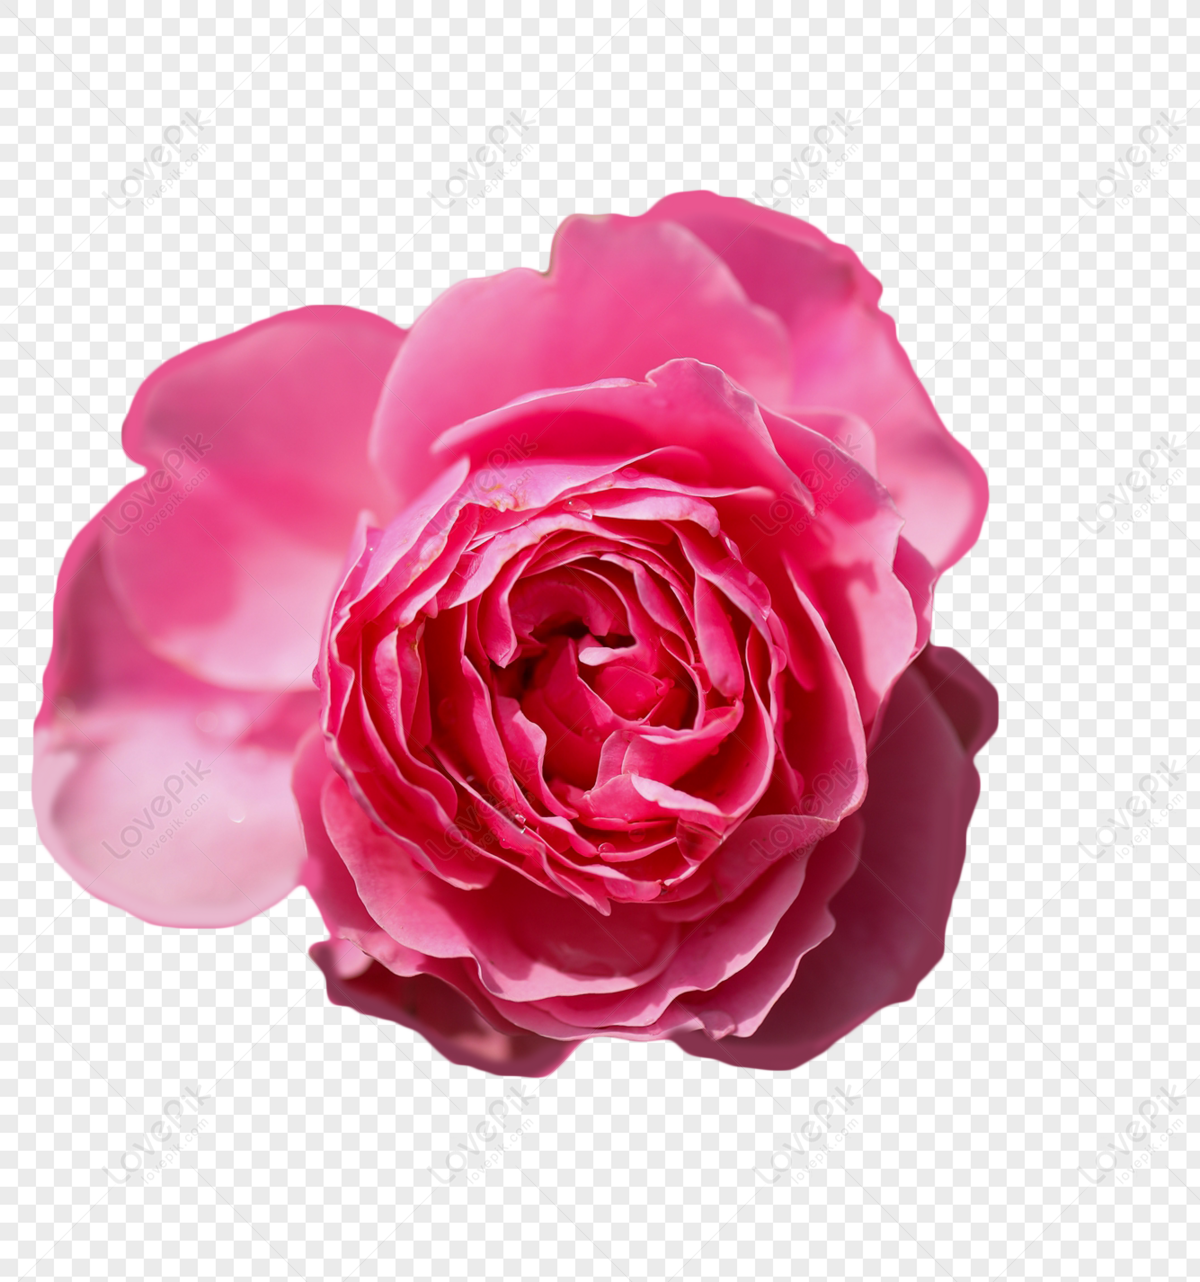 nền Hoa hồng, 160000+ một hình ảnh nền của Hoa hồng tải về miễn phí.